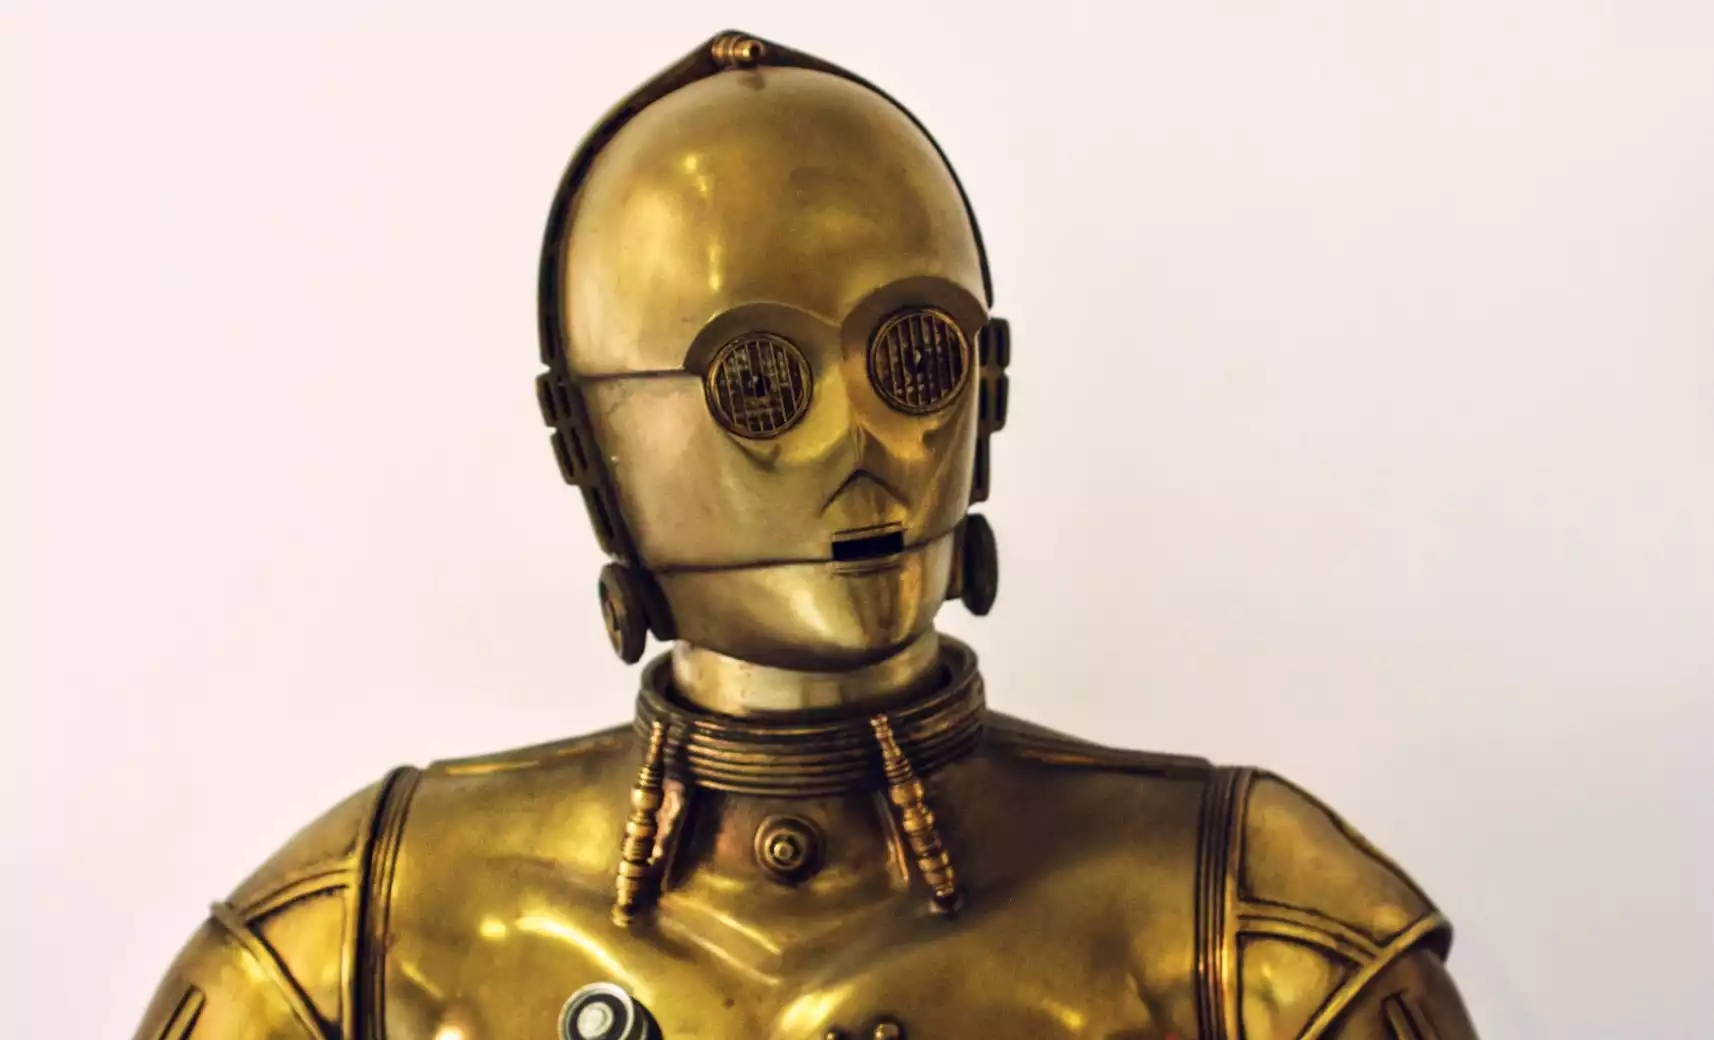 Die KI C3PO kennen viele als Assistent und Übersetzter aus den Star Wars Filmen